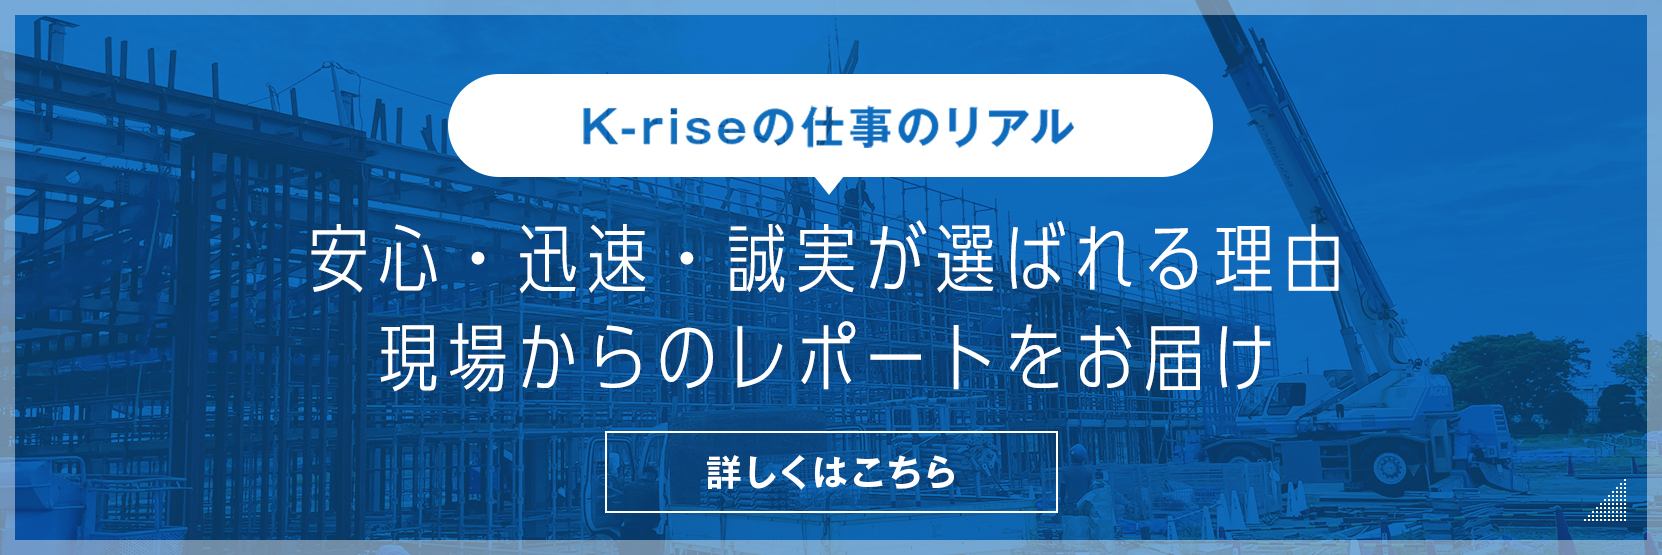 K-rise の仕事のリアル。安心・迅速・誠実が選ばれる理由。現場からのレポートをお届け